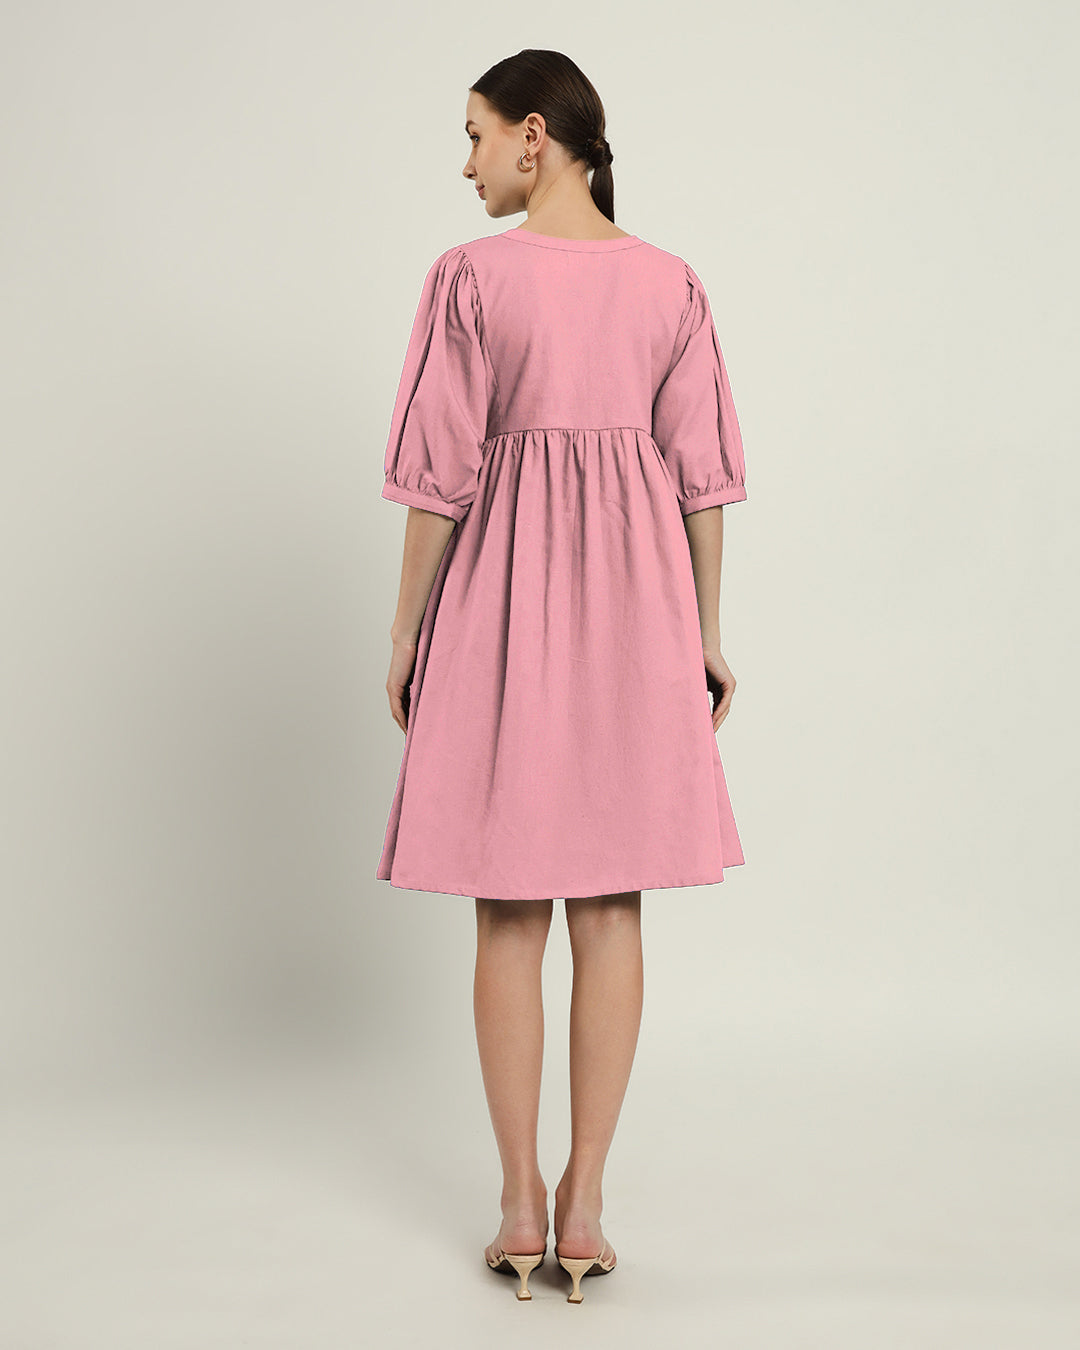 The Aira Fondant Pink Dress